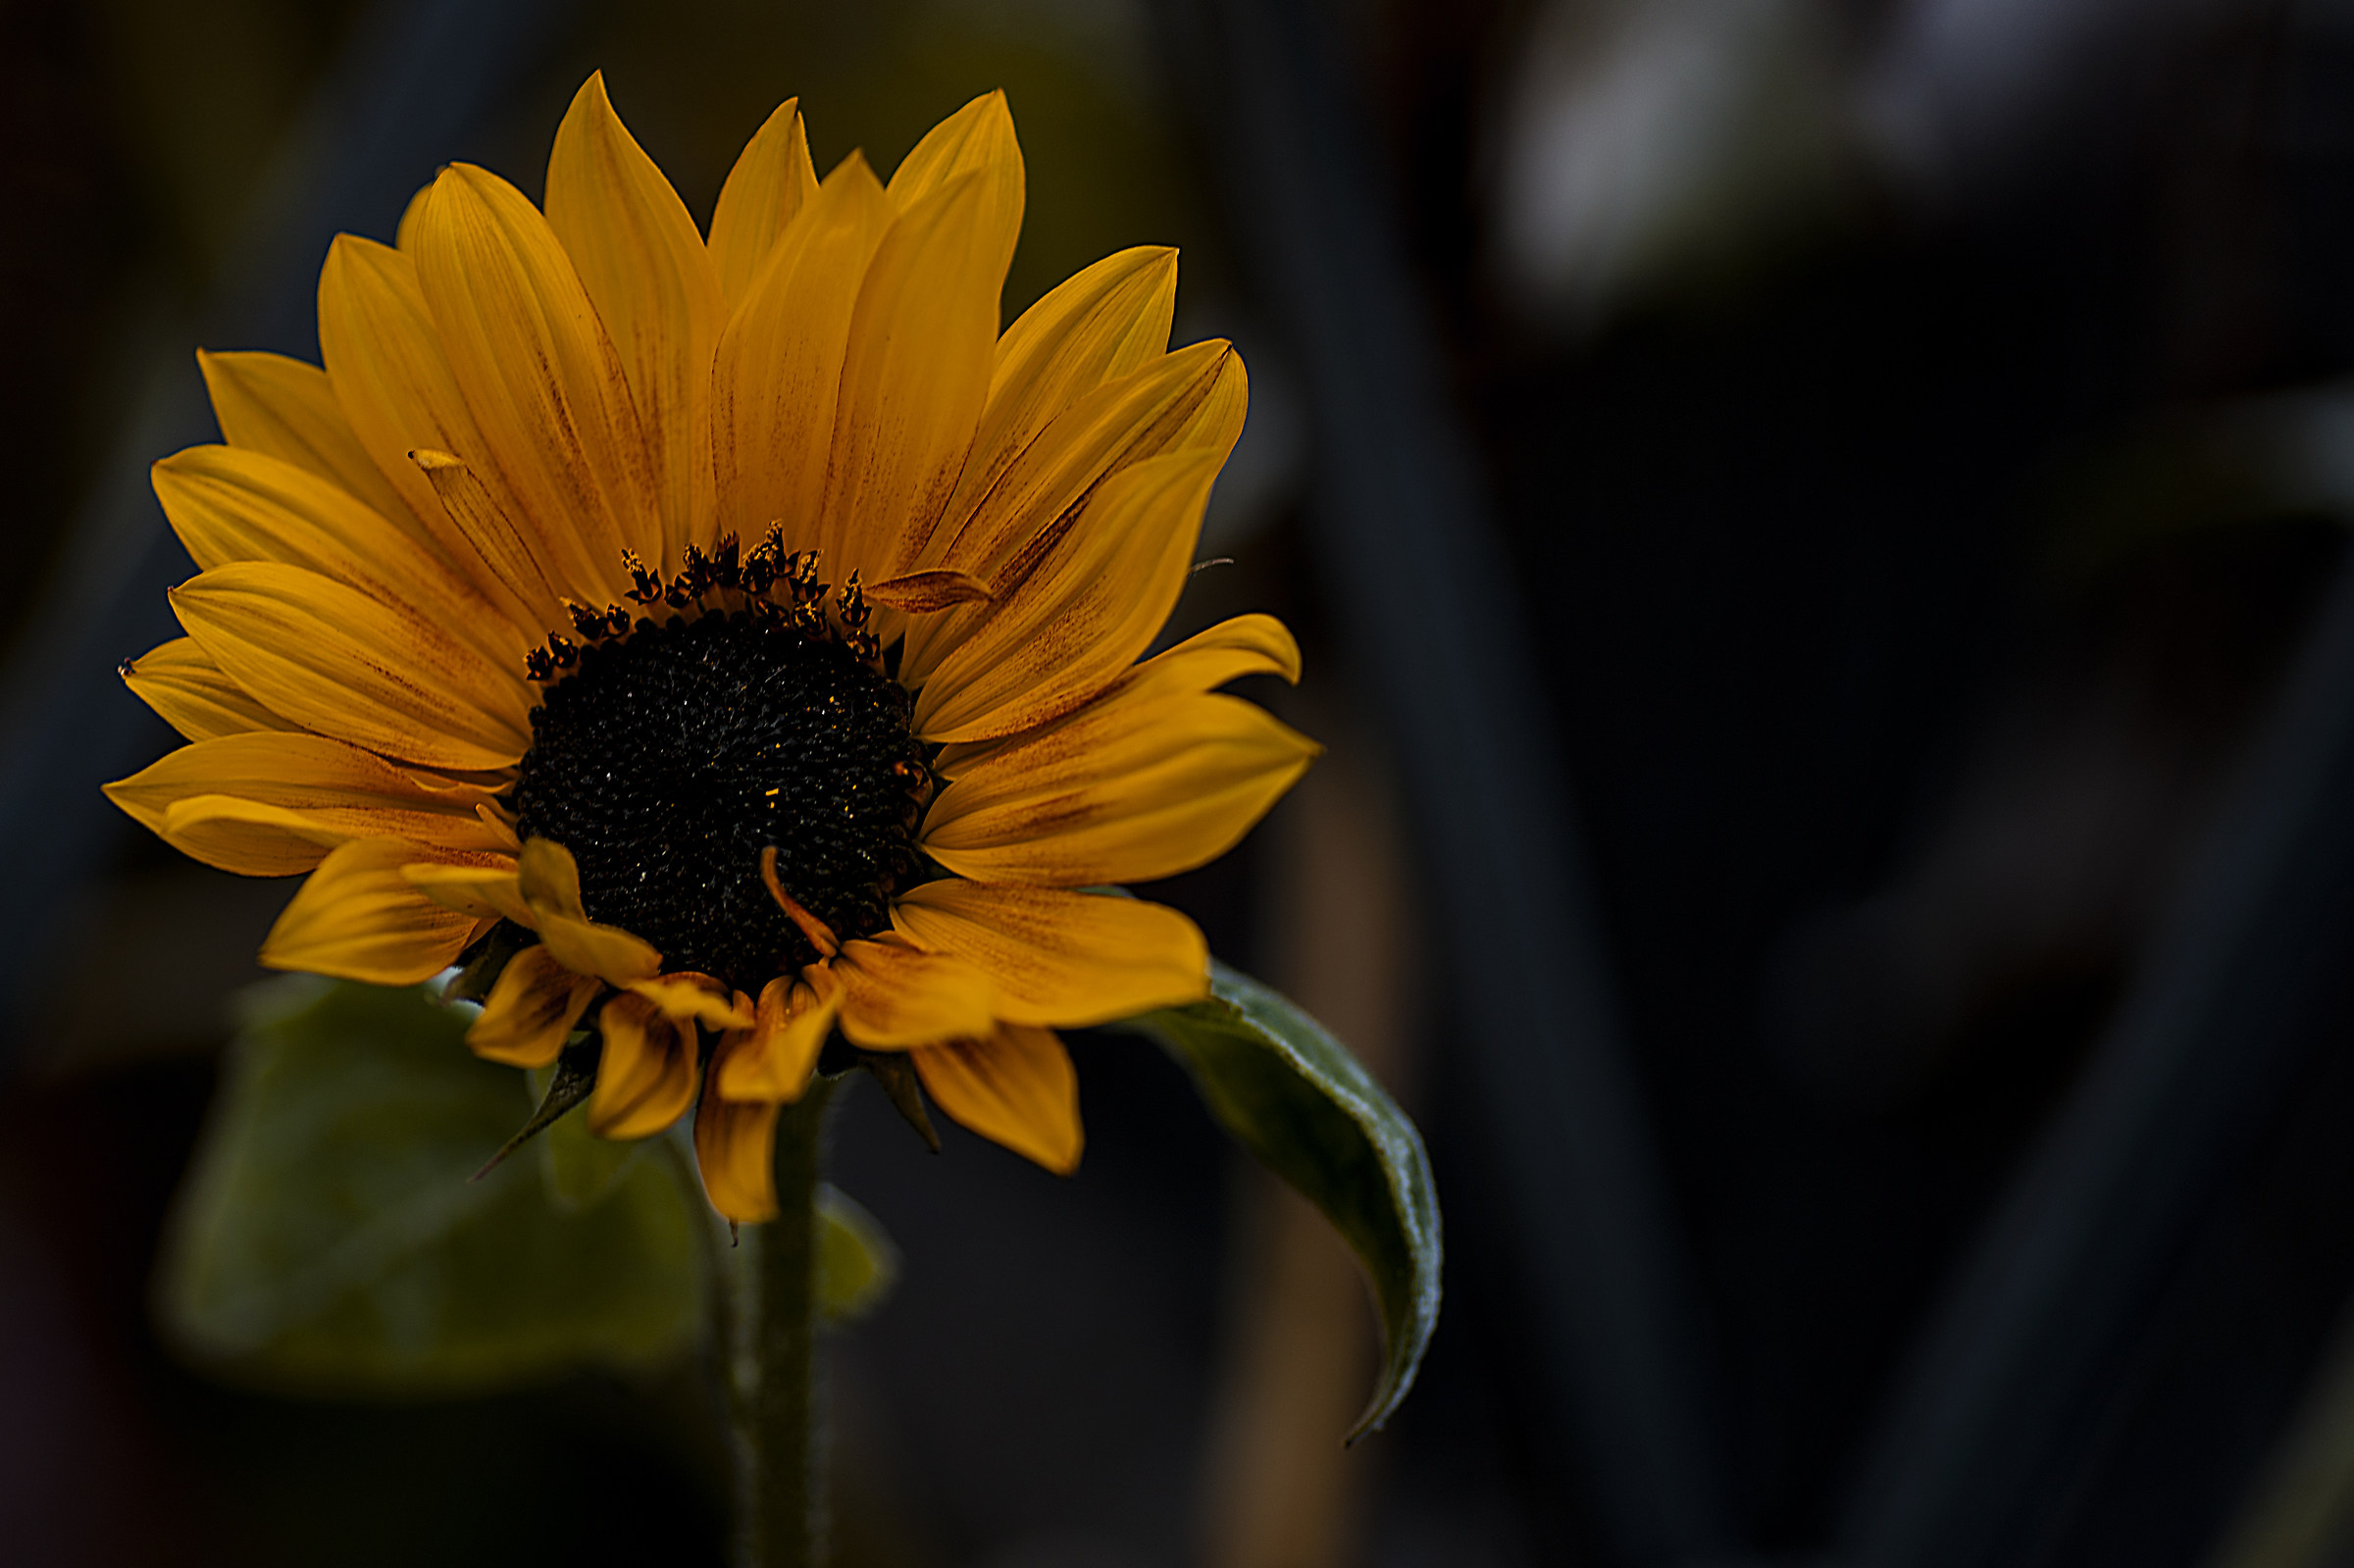 Sunflower sunless...